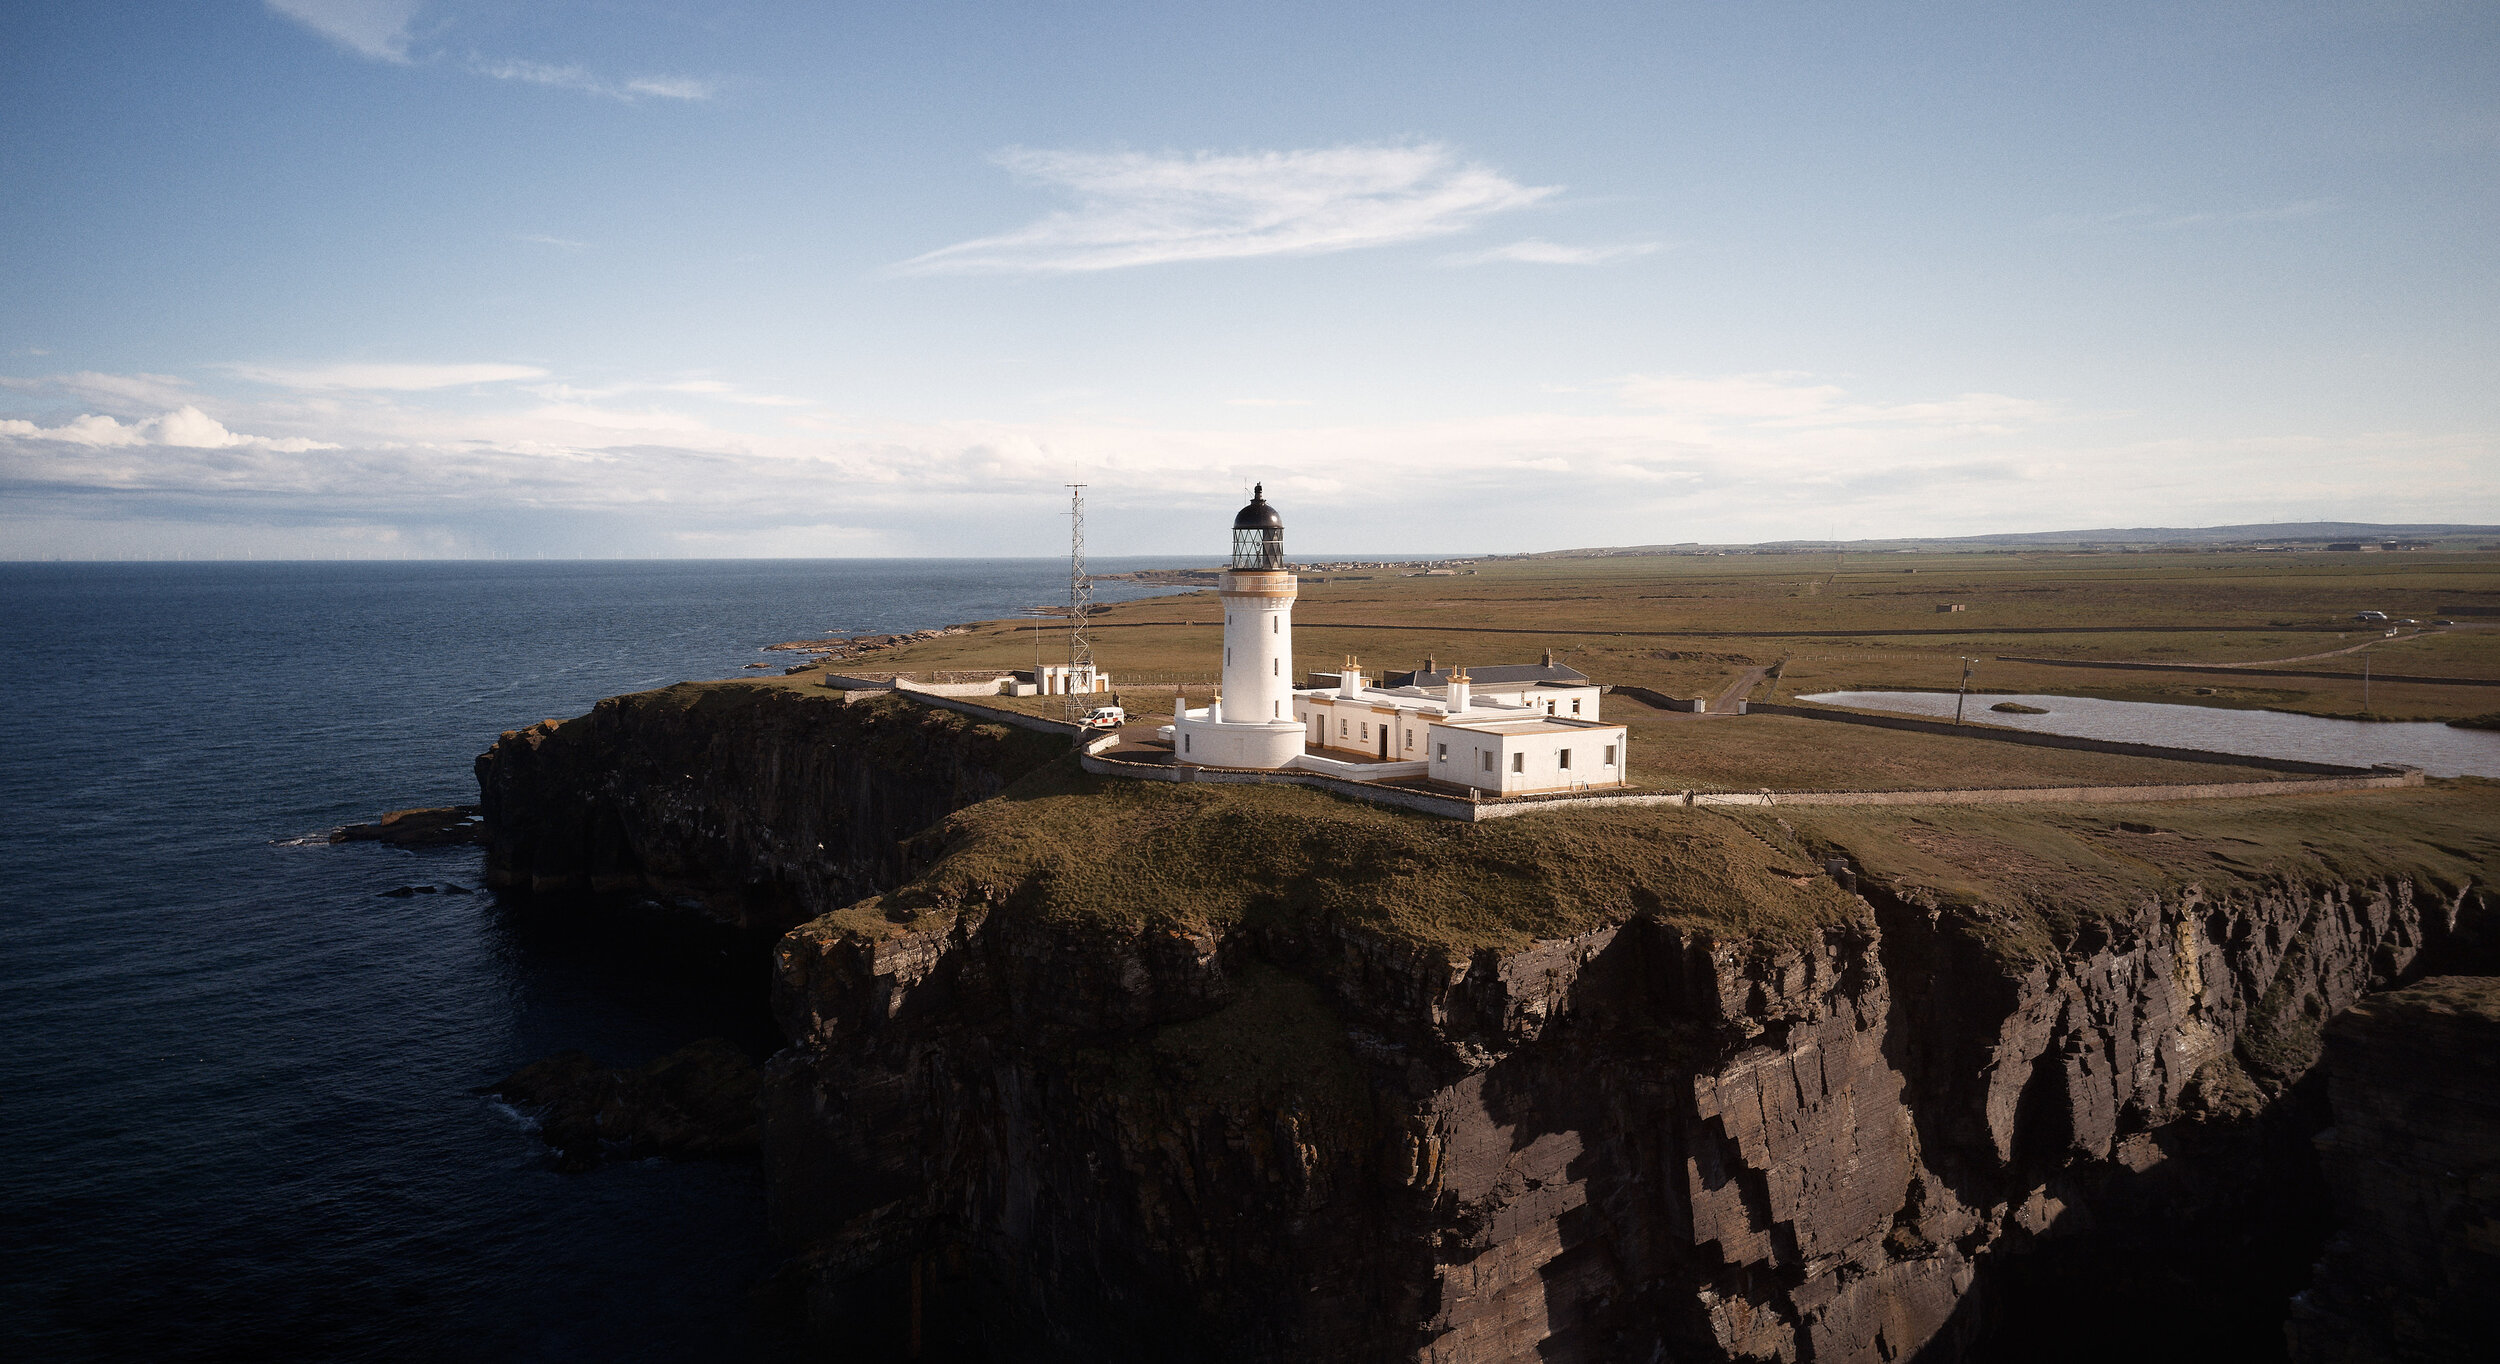 Noss Head Lighthouse Caithness, Scotland. 